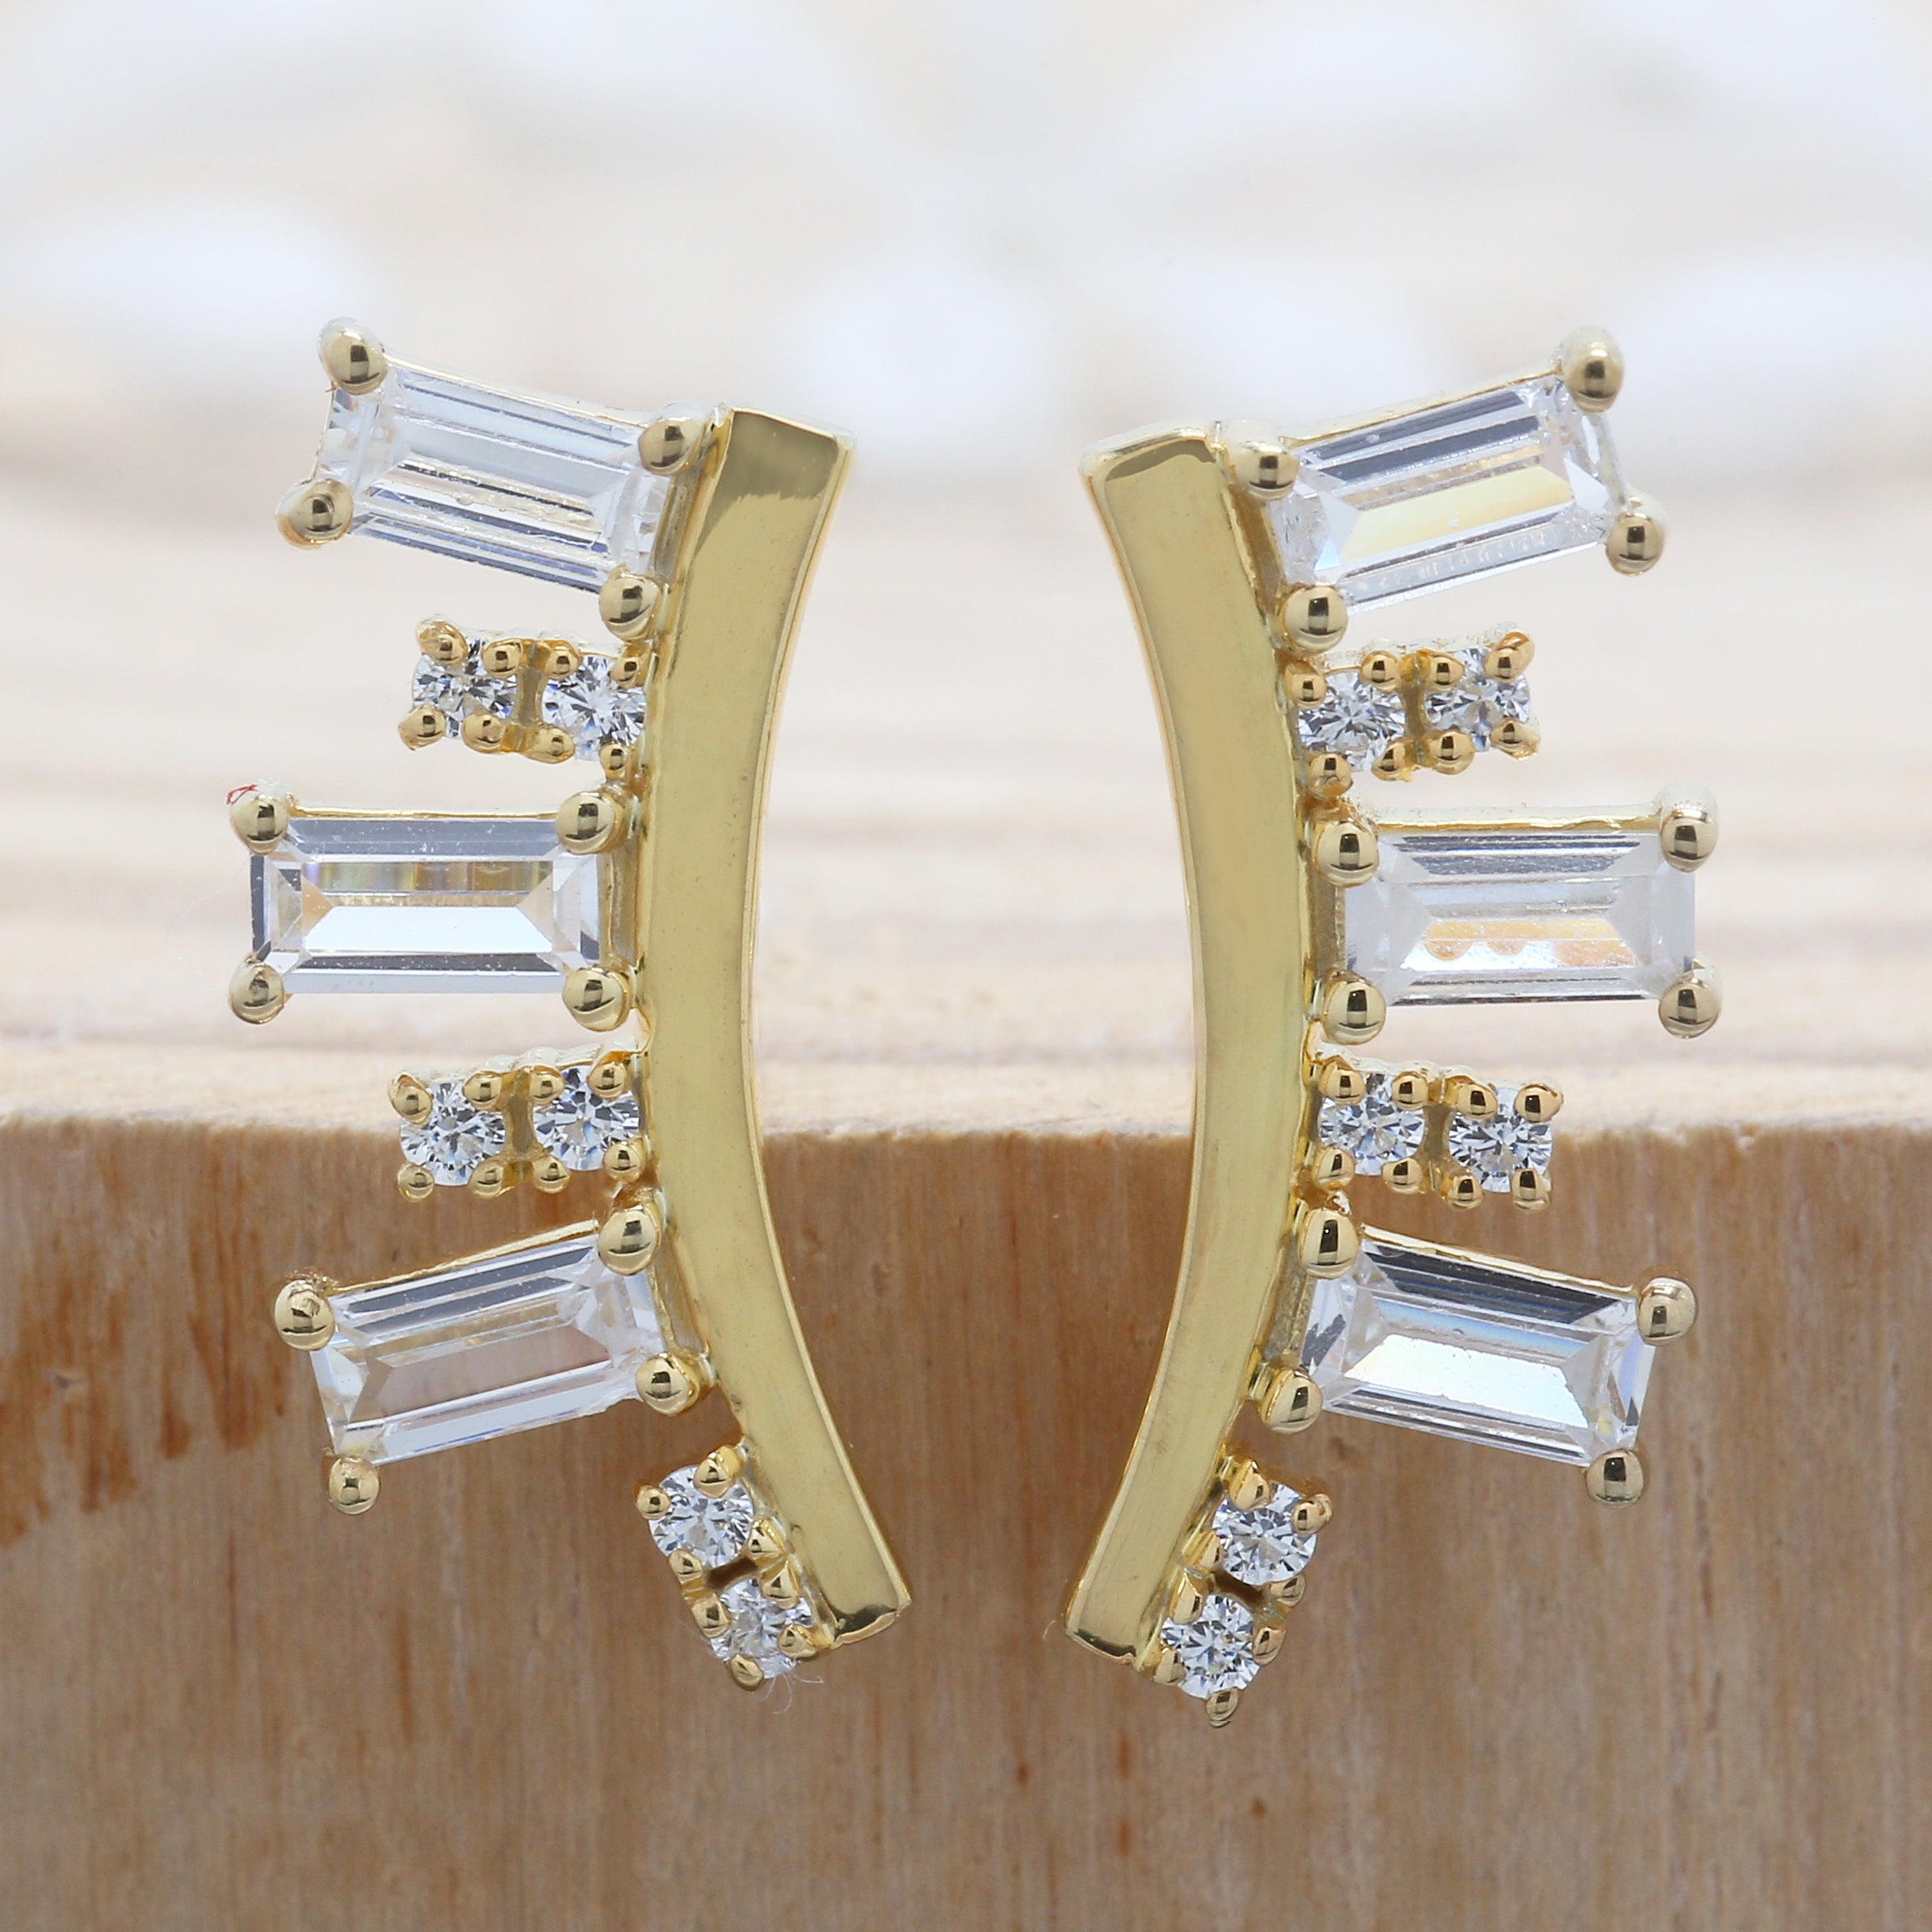 0.84 Ct White Diamond Earring, Baguette Diamond Earring, Round Diamond Earring, 14K Yellow Gold Earring, Gift For Her, Wedding Gift KD935